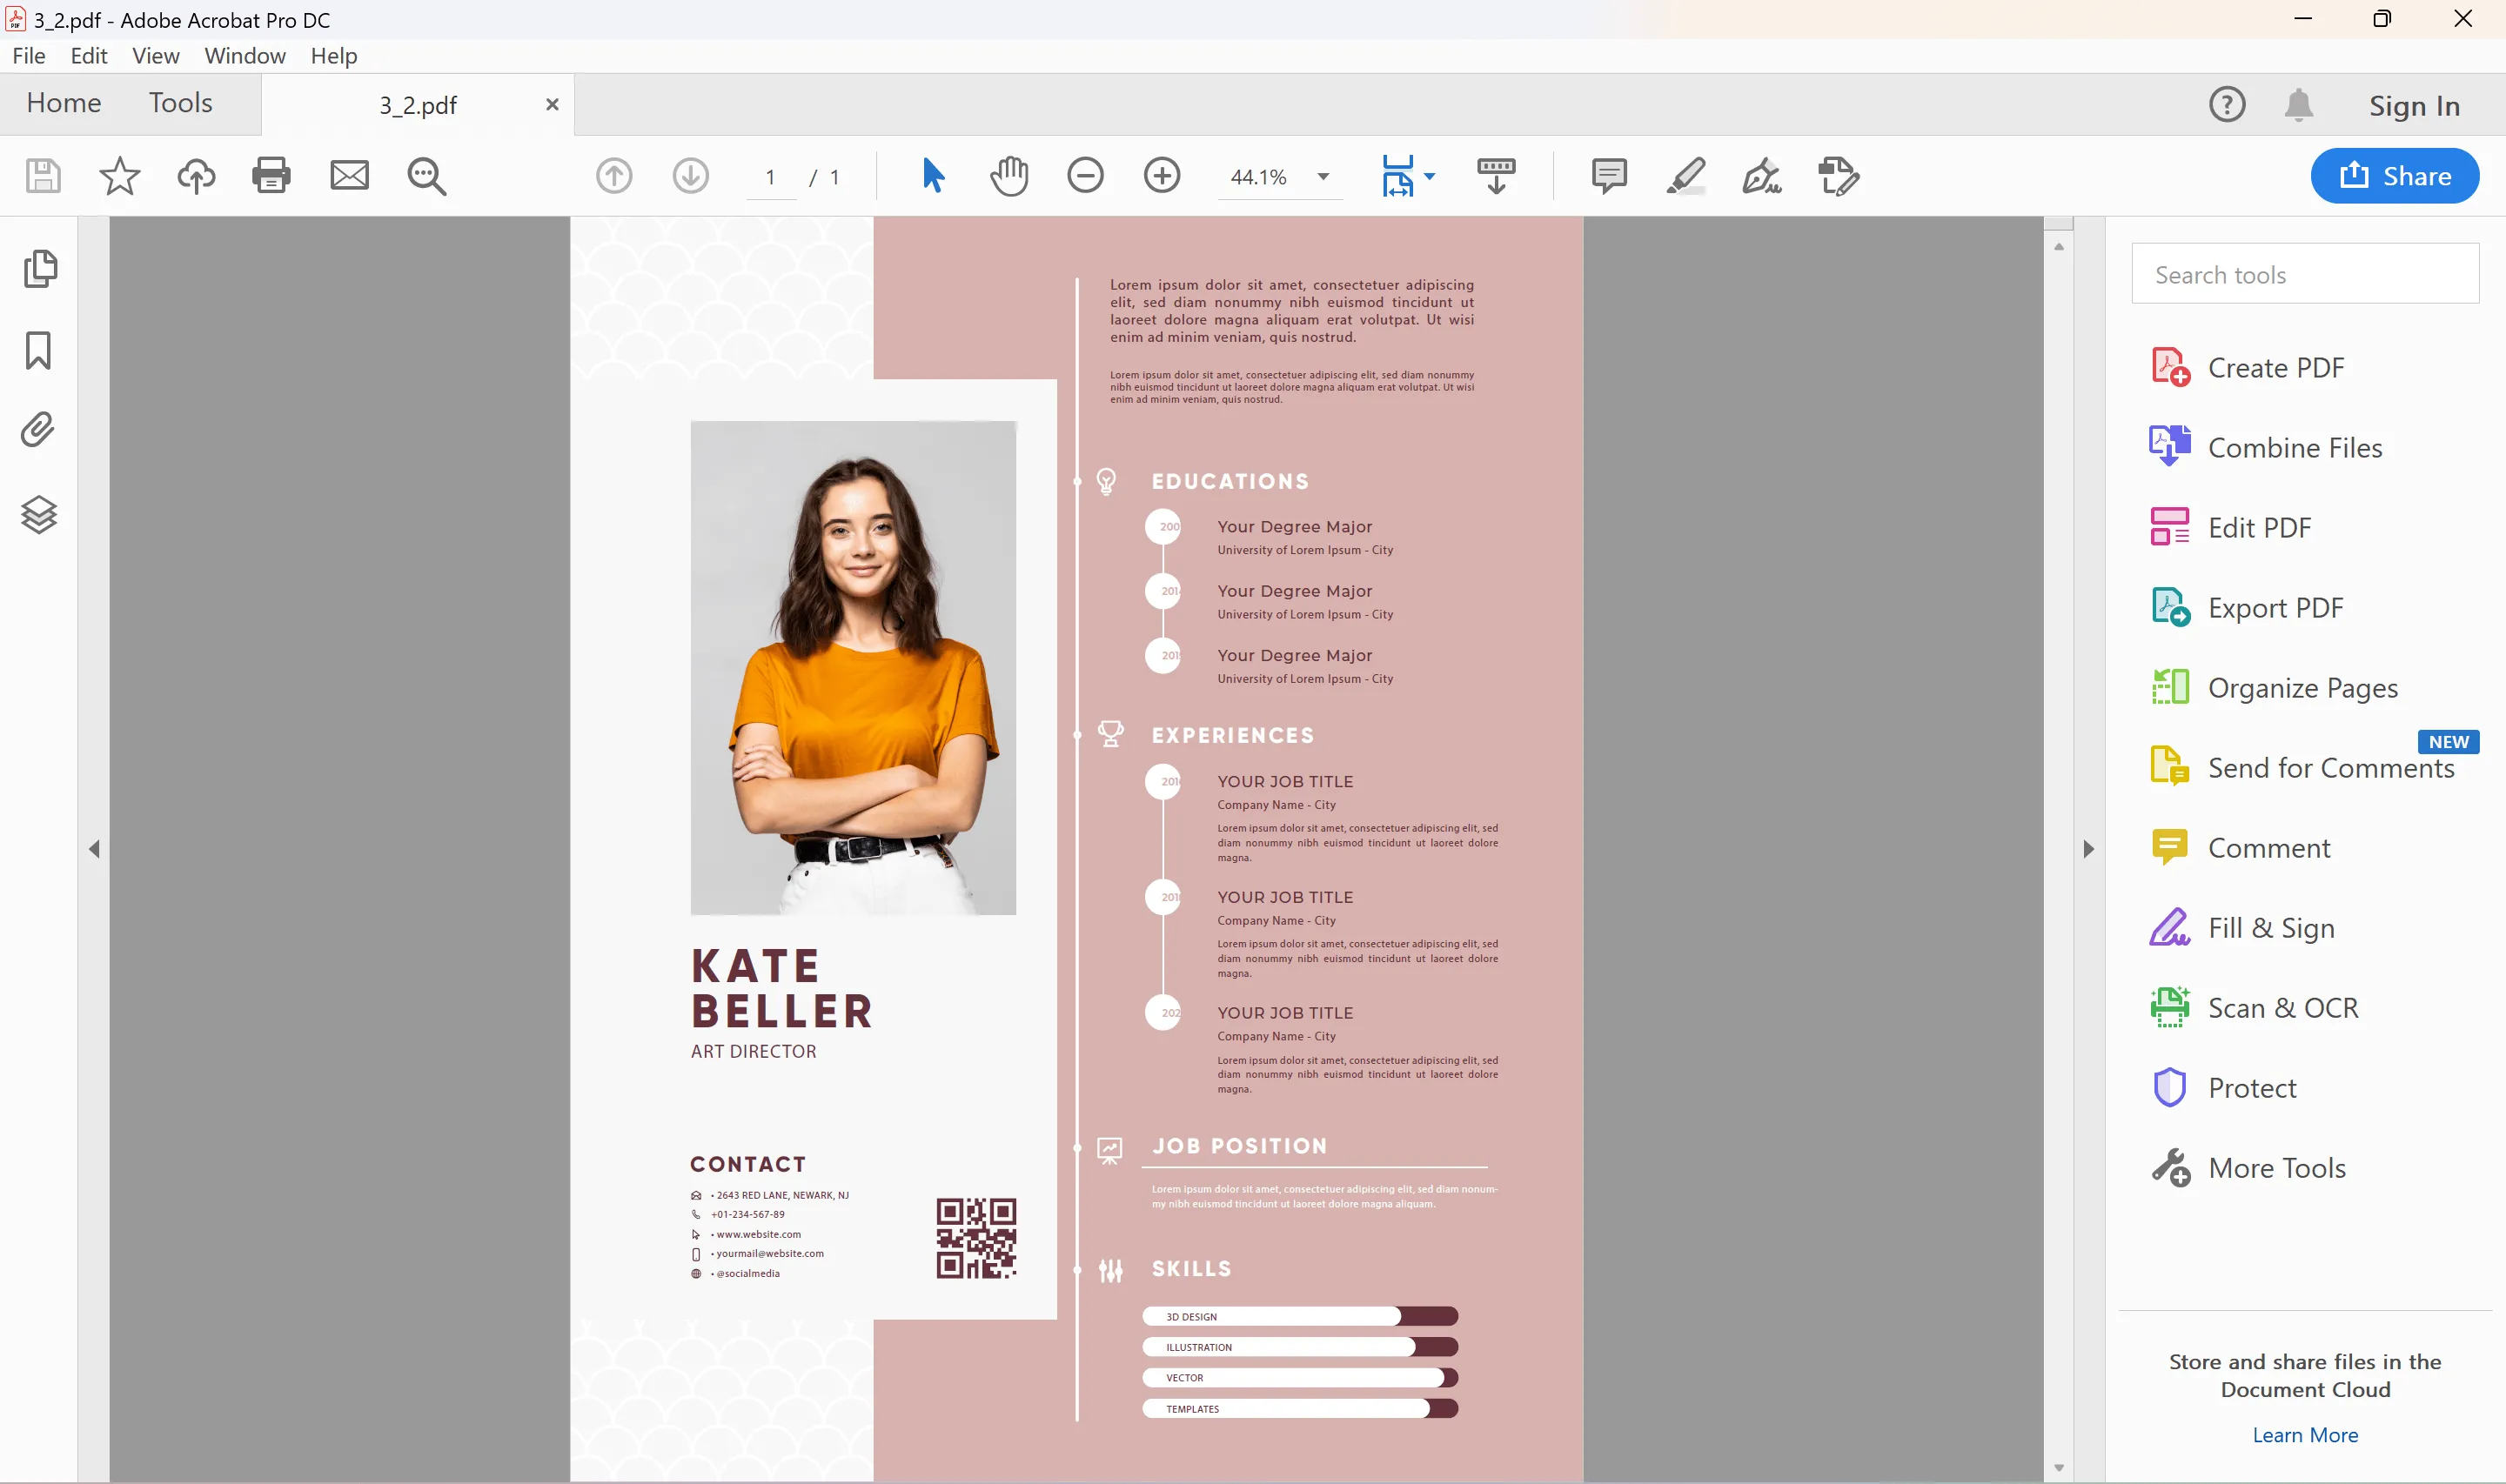 Adobe Acrobat DC PDF resume editor